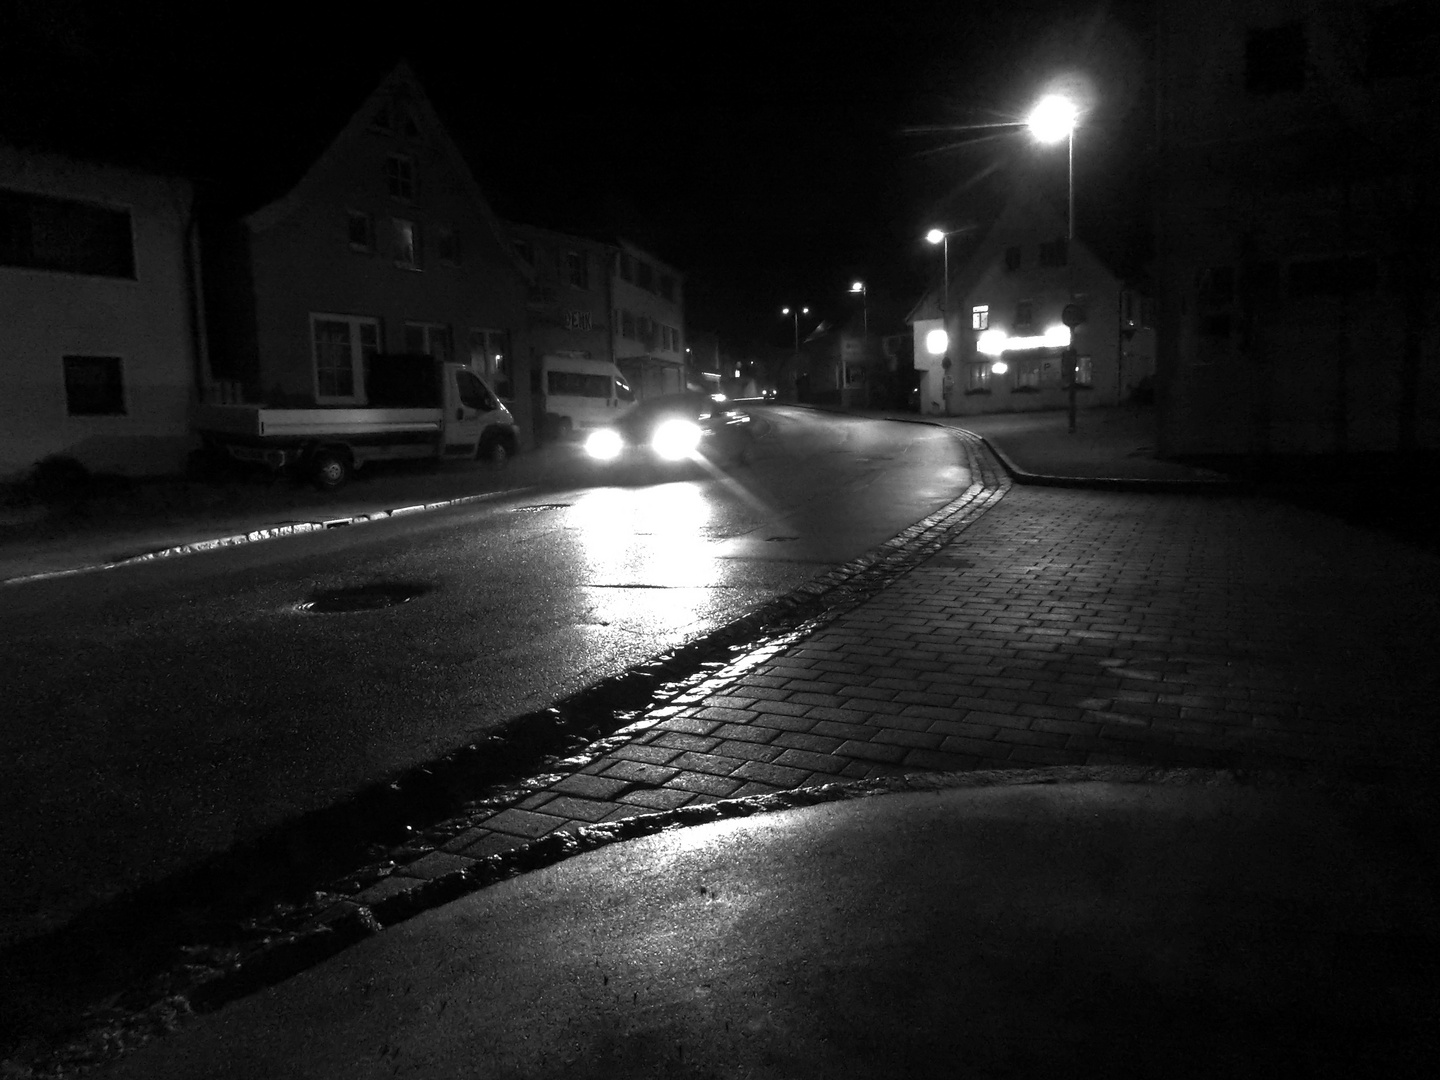 Streetlights